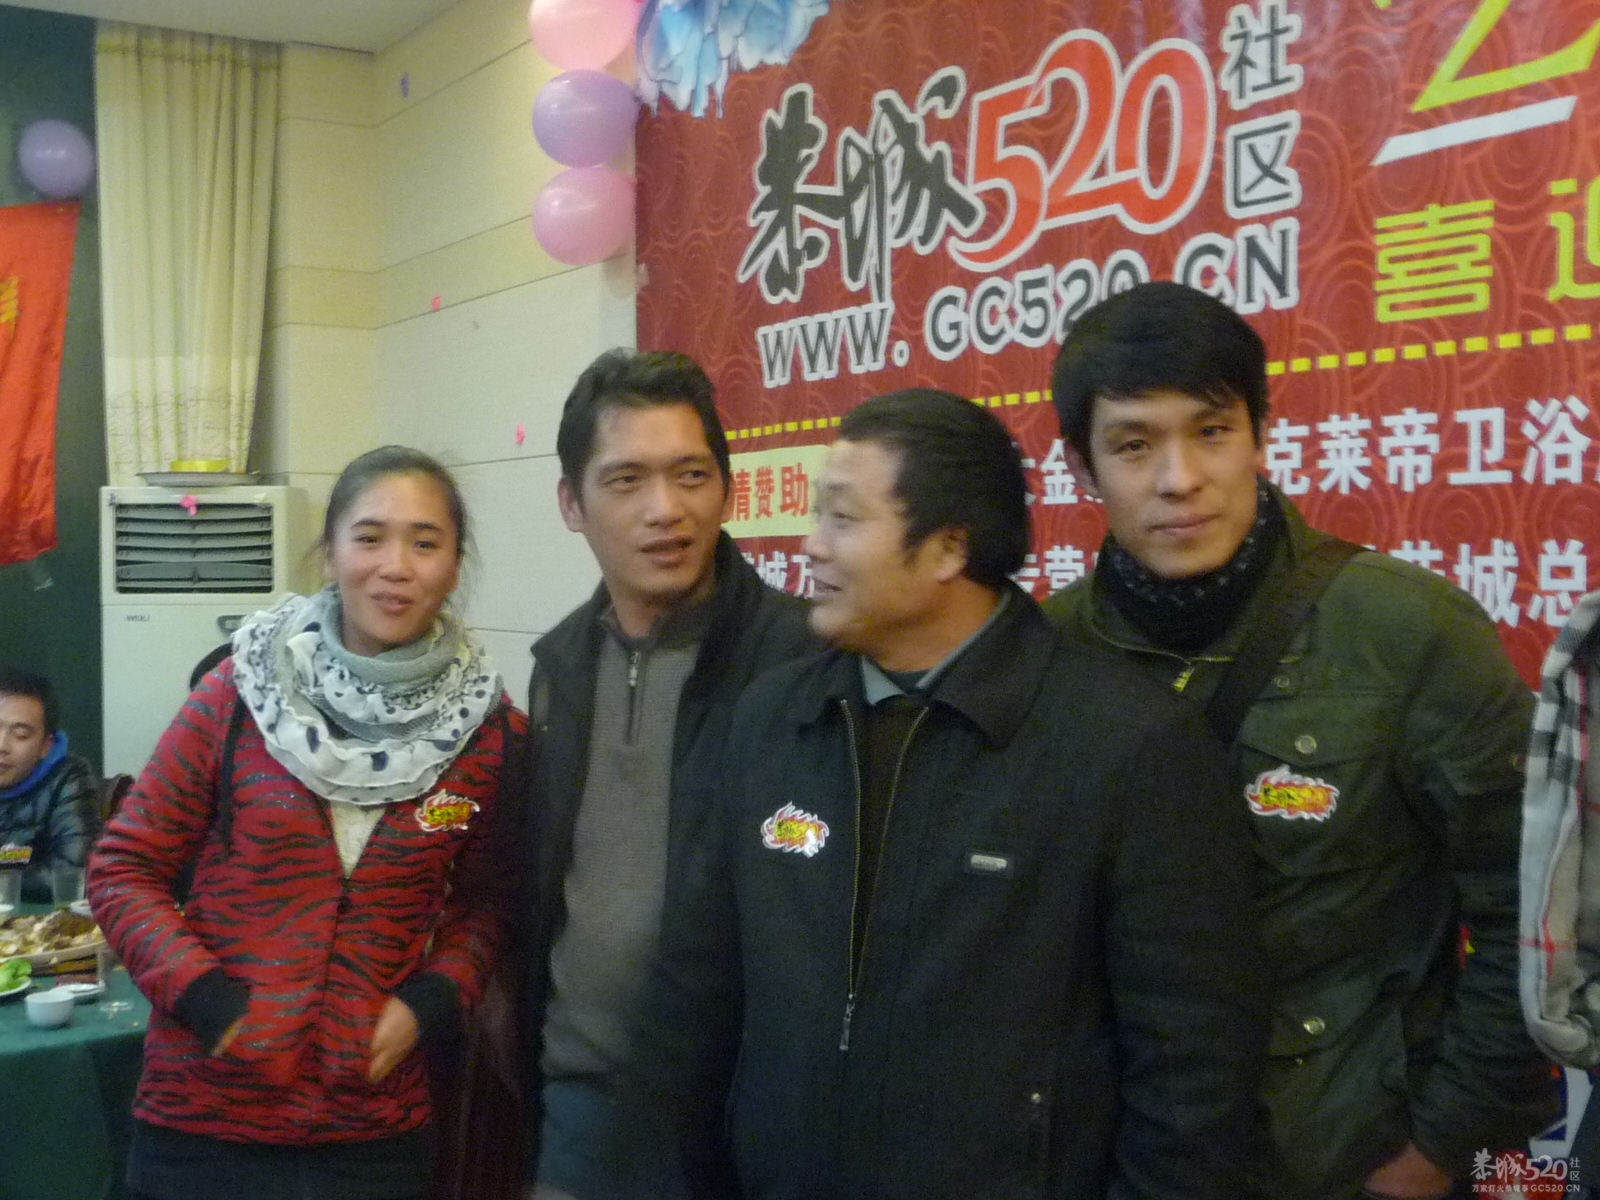 2012年1月20日恭城520社区论谈欢庆相聚651 / 作者:我不懂你 / 帖子ID:8582